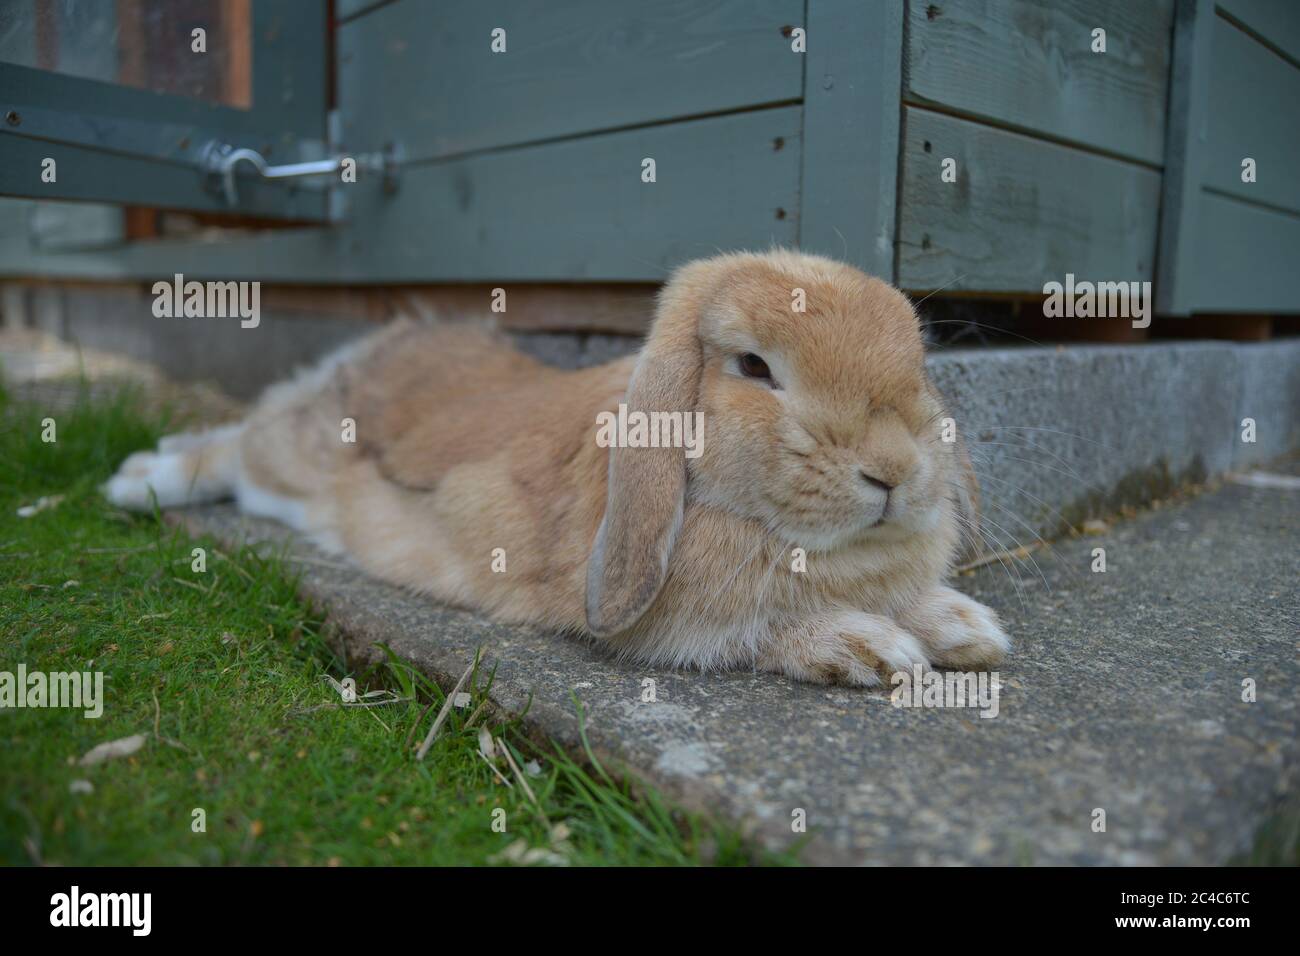 Giovane coniglio di lop di sabbia arancione giace rilassato su lastra di pietra invece di erba per raffreddare vicino al suo capannone. Foto Stock